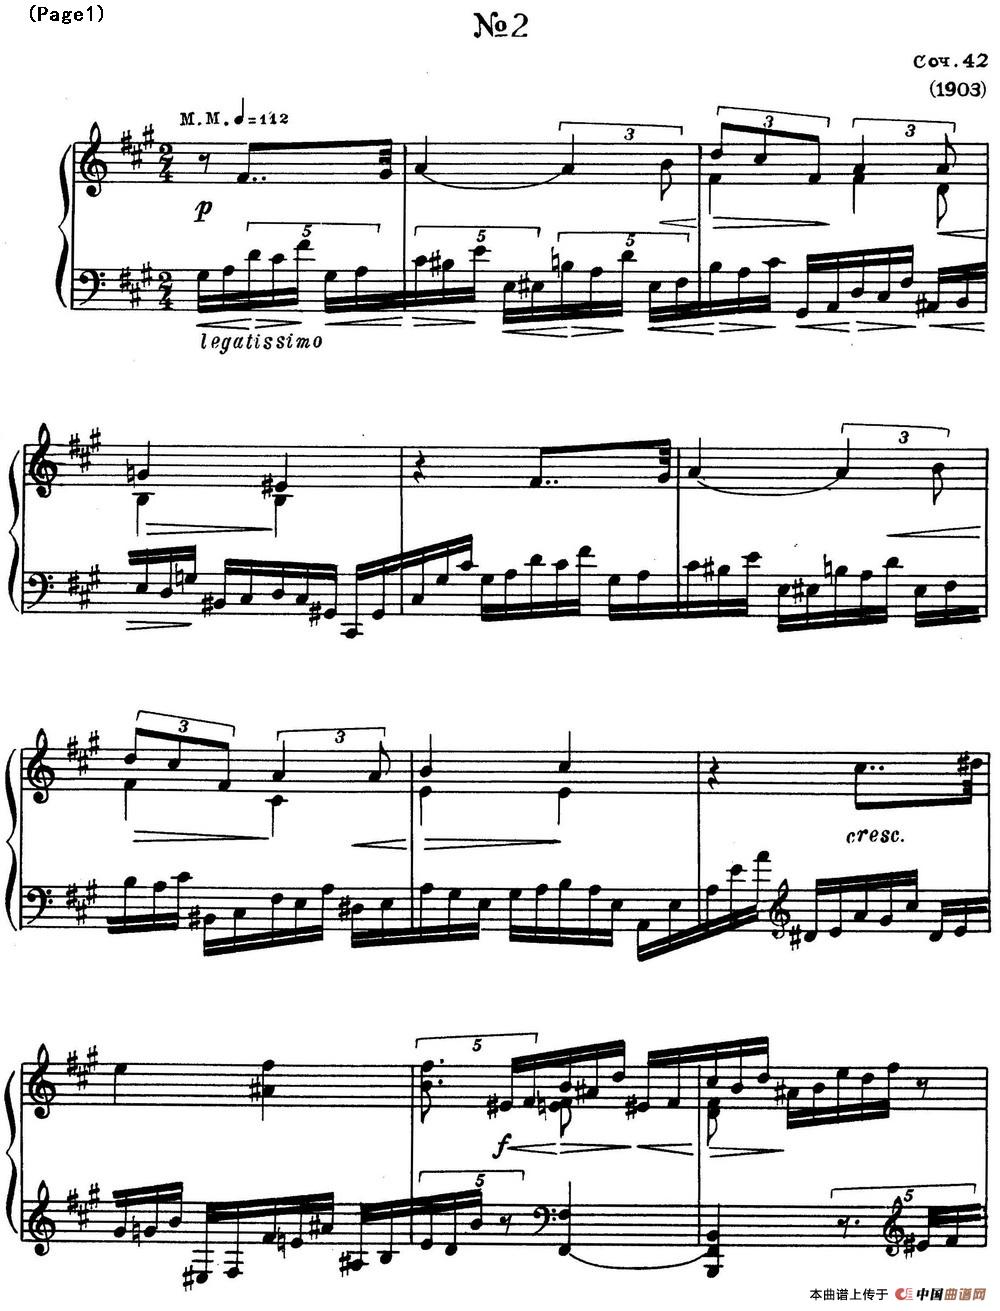 斯克里亚宾8首钢琴练习曲 Op42（No.2 Alexander Scriabin Etudes）(1)_Scriabin Etude Op.42 No.2_页面_1.jpg